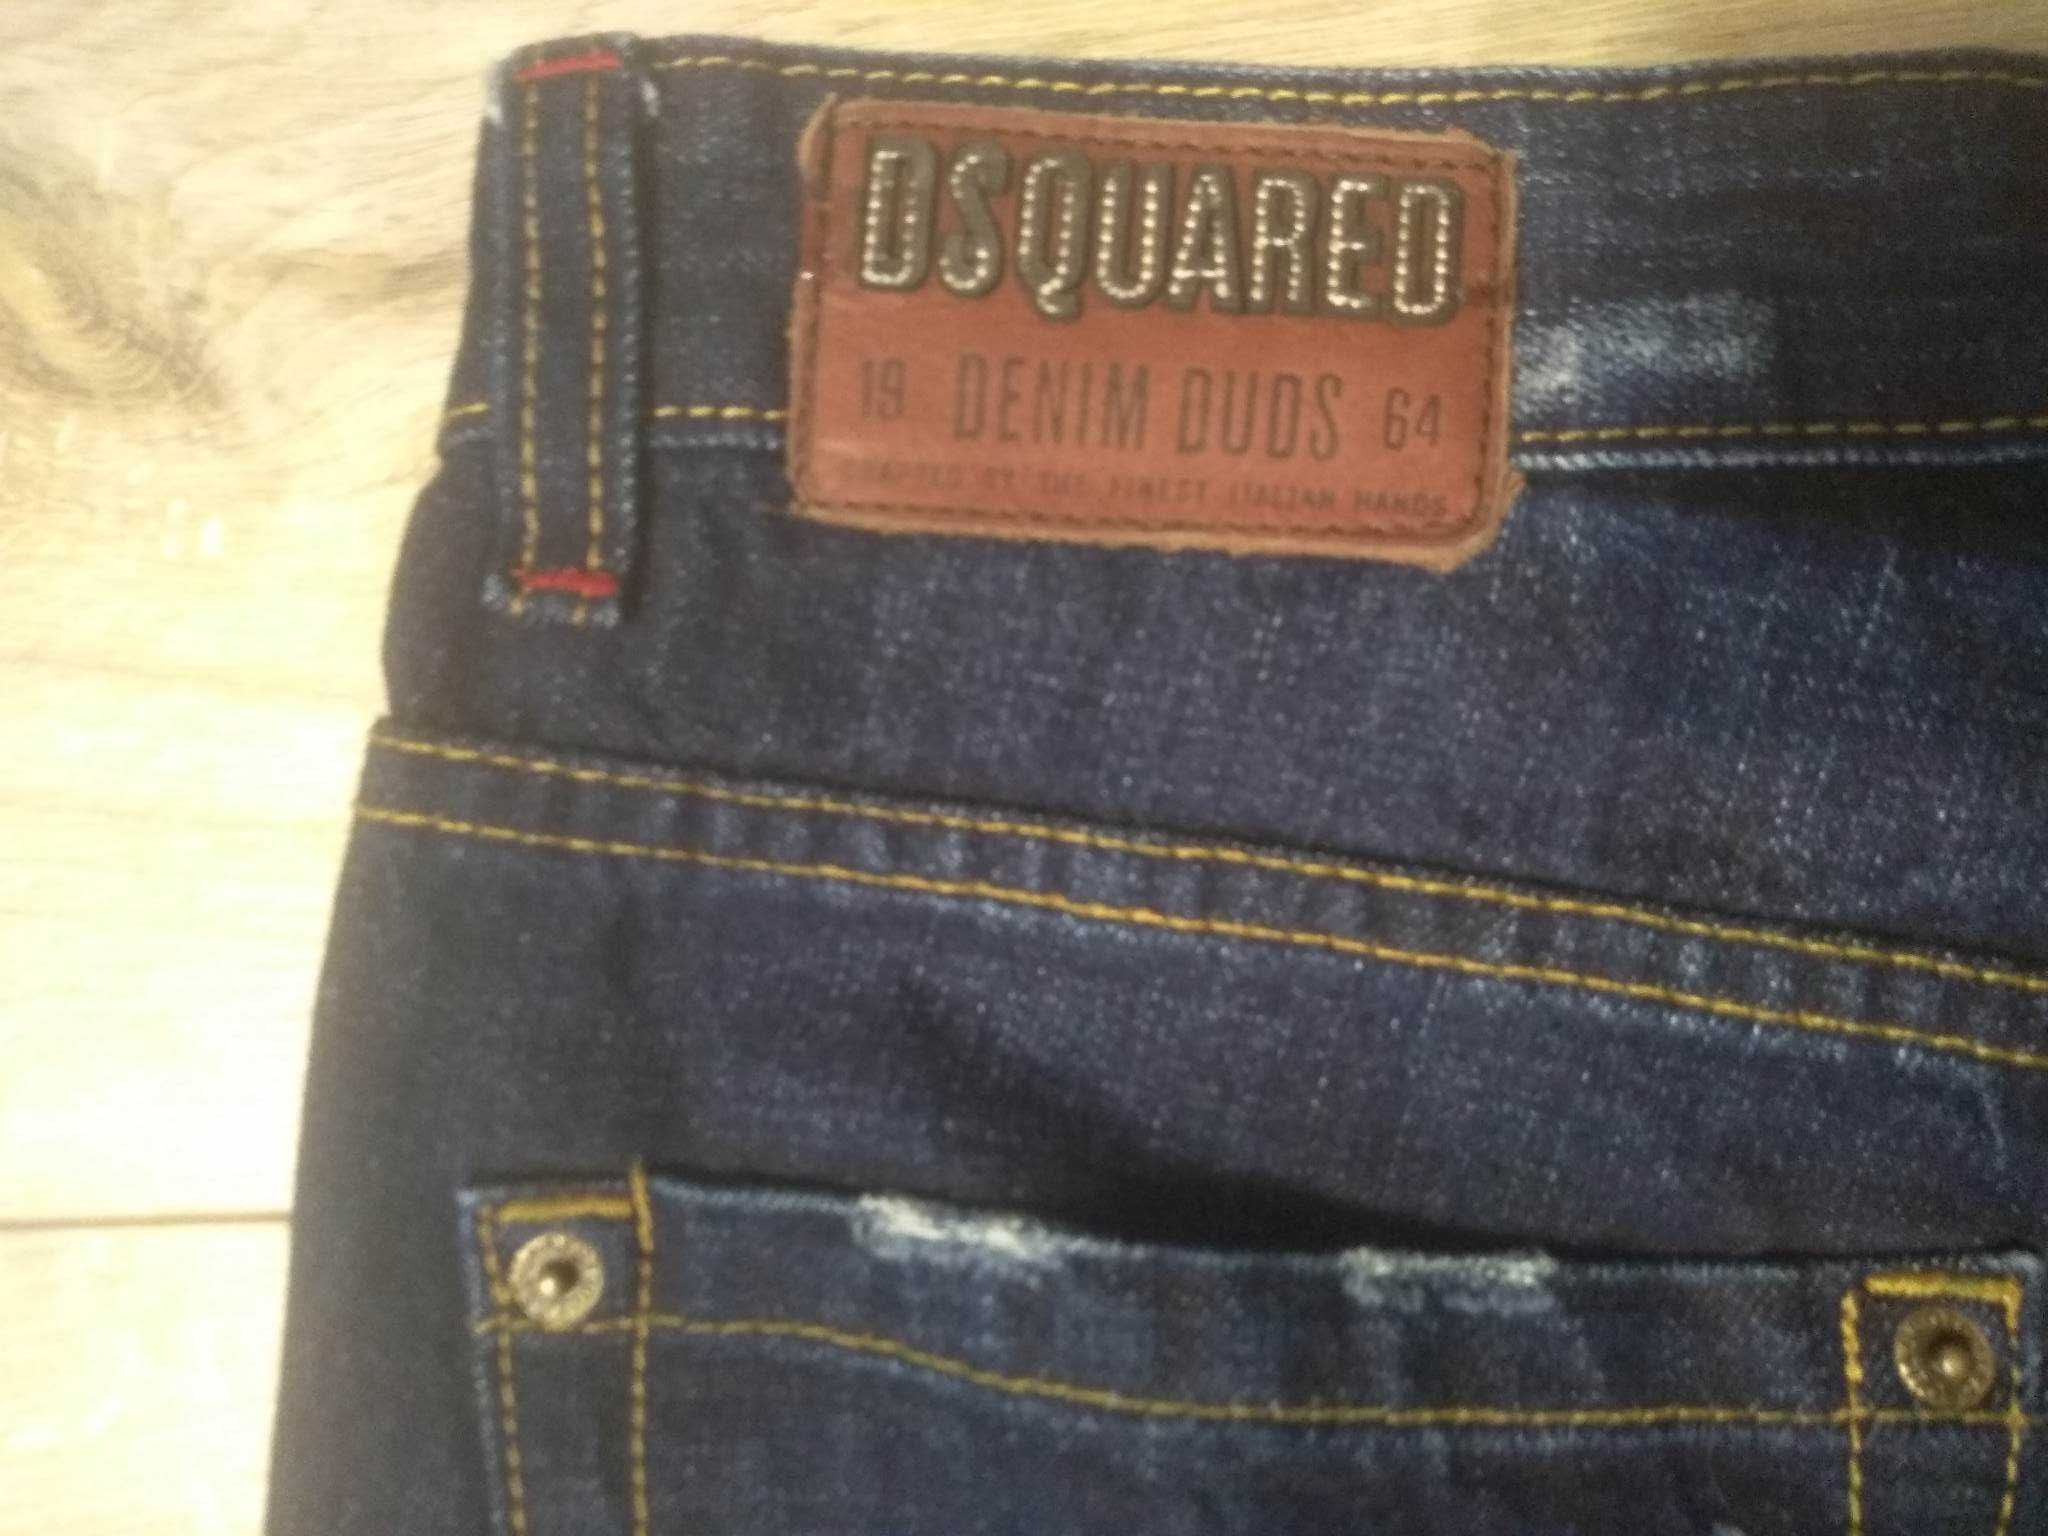 Dsquared spodnie jeansowe size 34 biodrówki